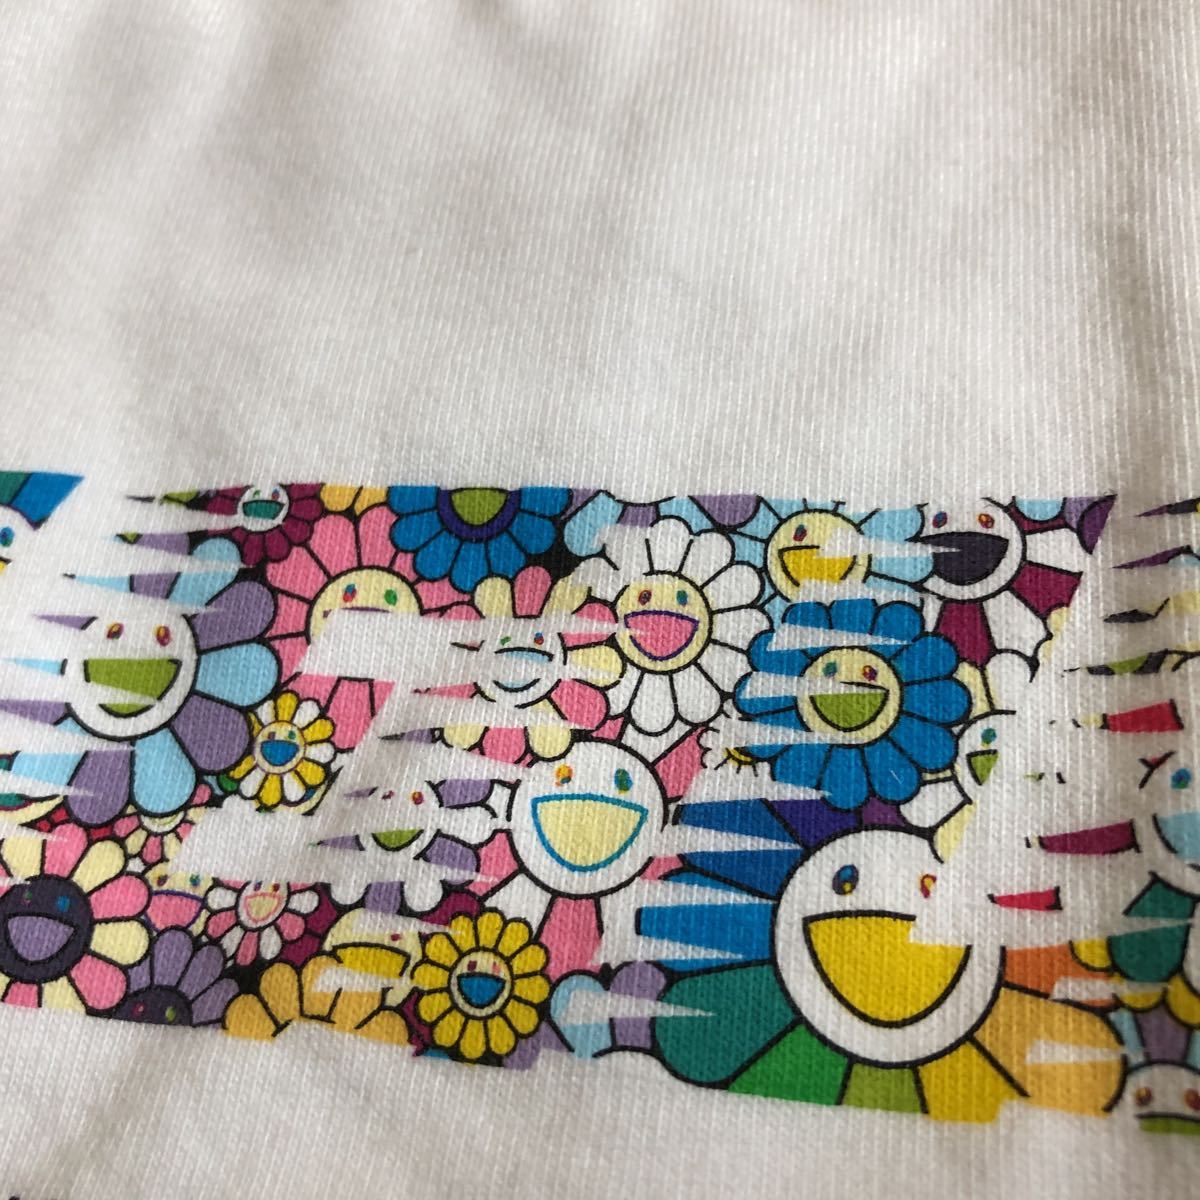 ビリーアイリッシュ × 村上隆 lady's S 新品 オーバーサイズ 半袖Tシャツ UNIQLO 白 BILLIE EILISH × TAKASHI MURAKAMI lady's Tshirts